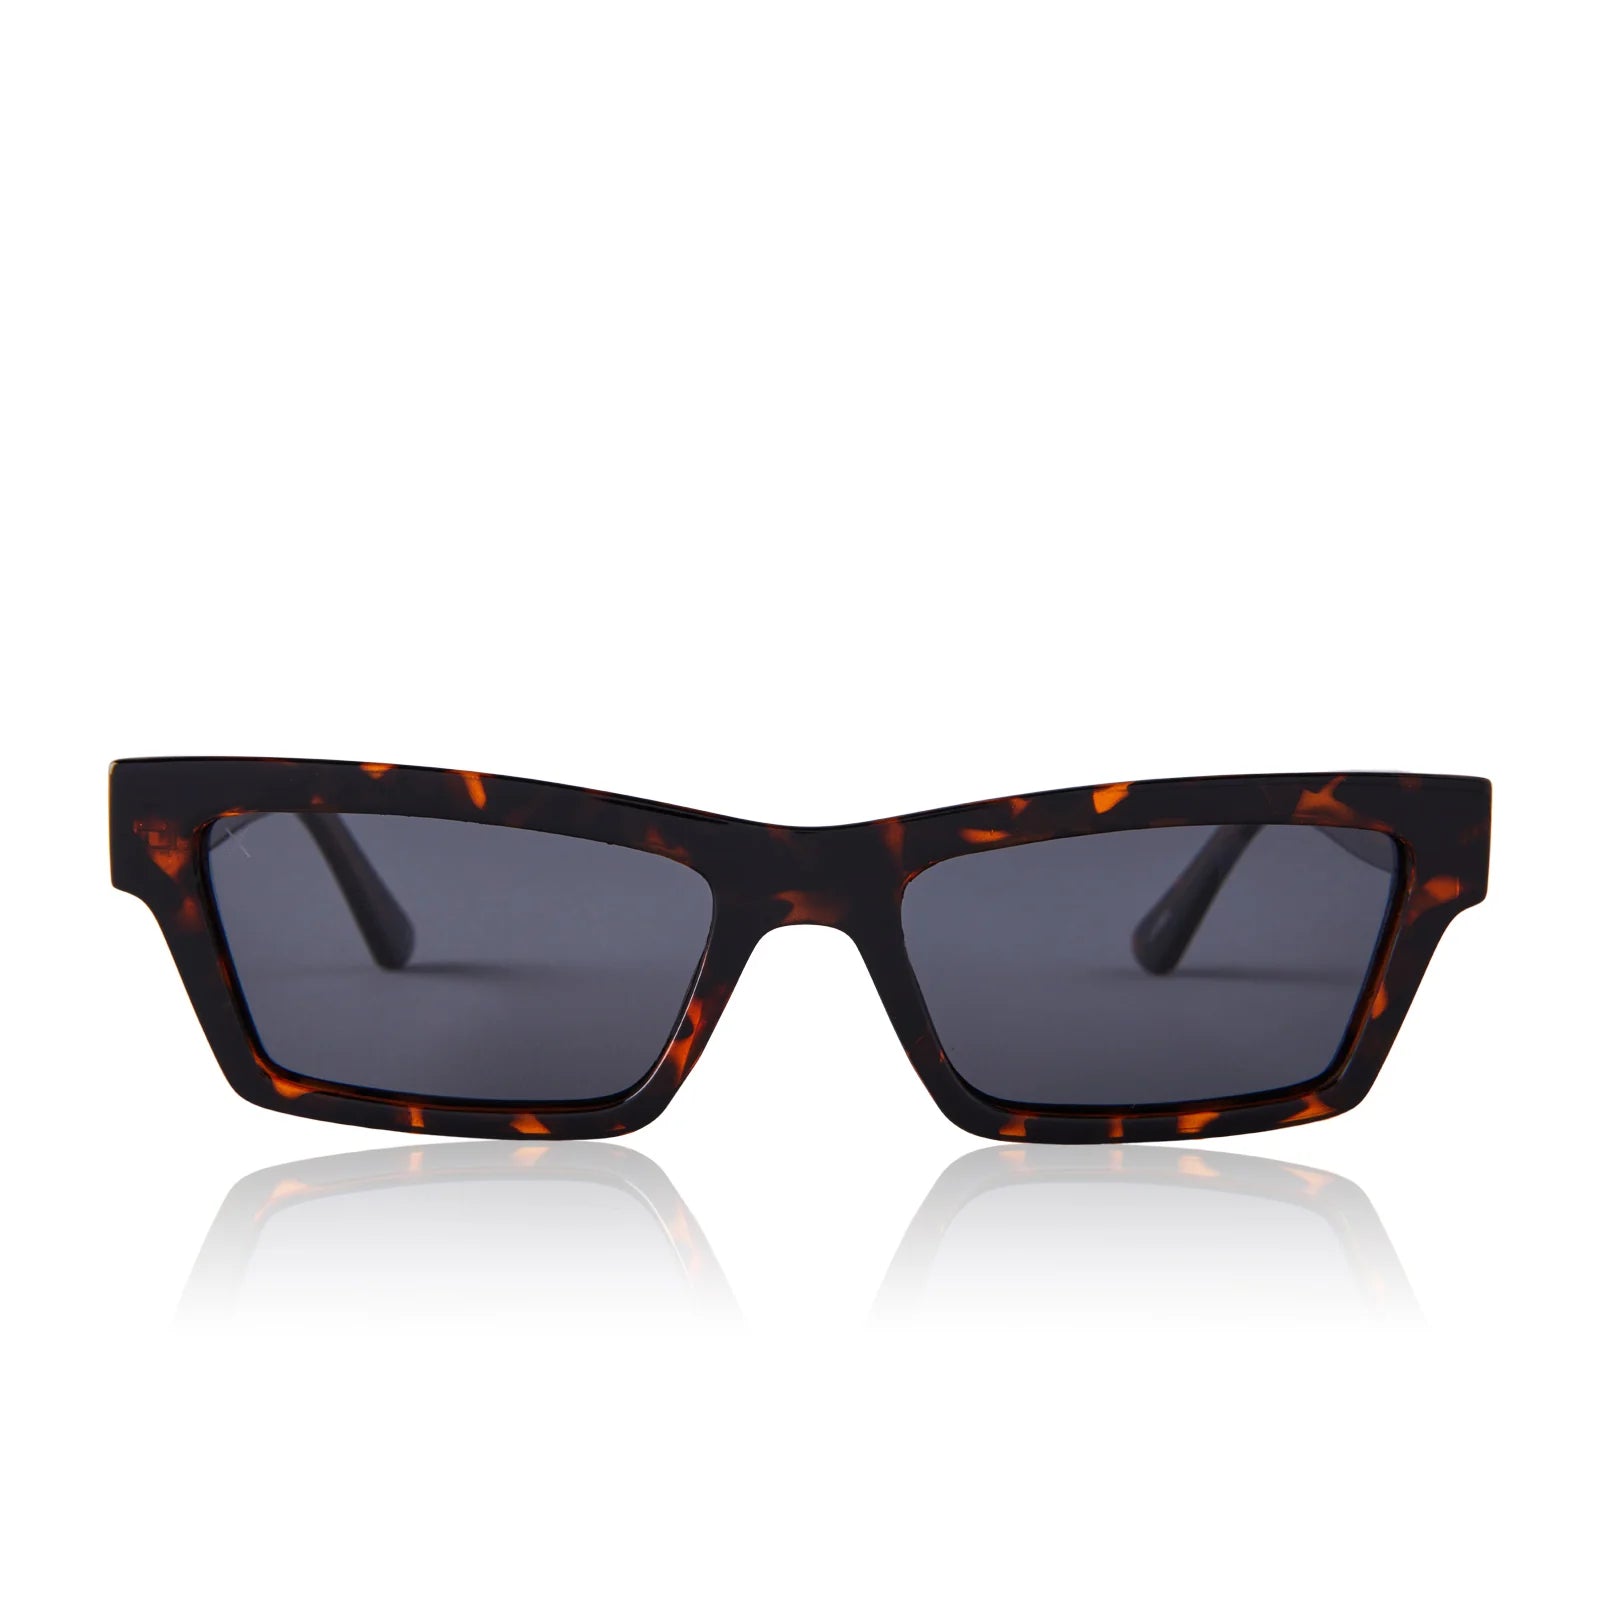 Laurel Polarized Sunglasses